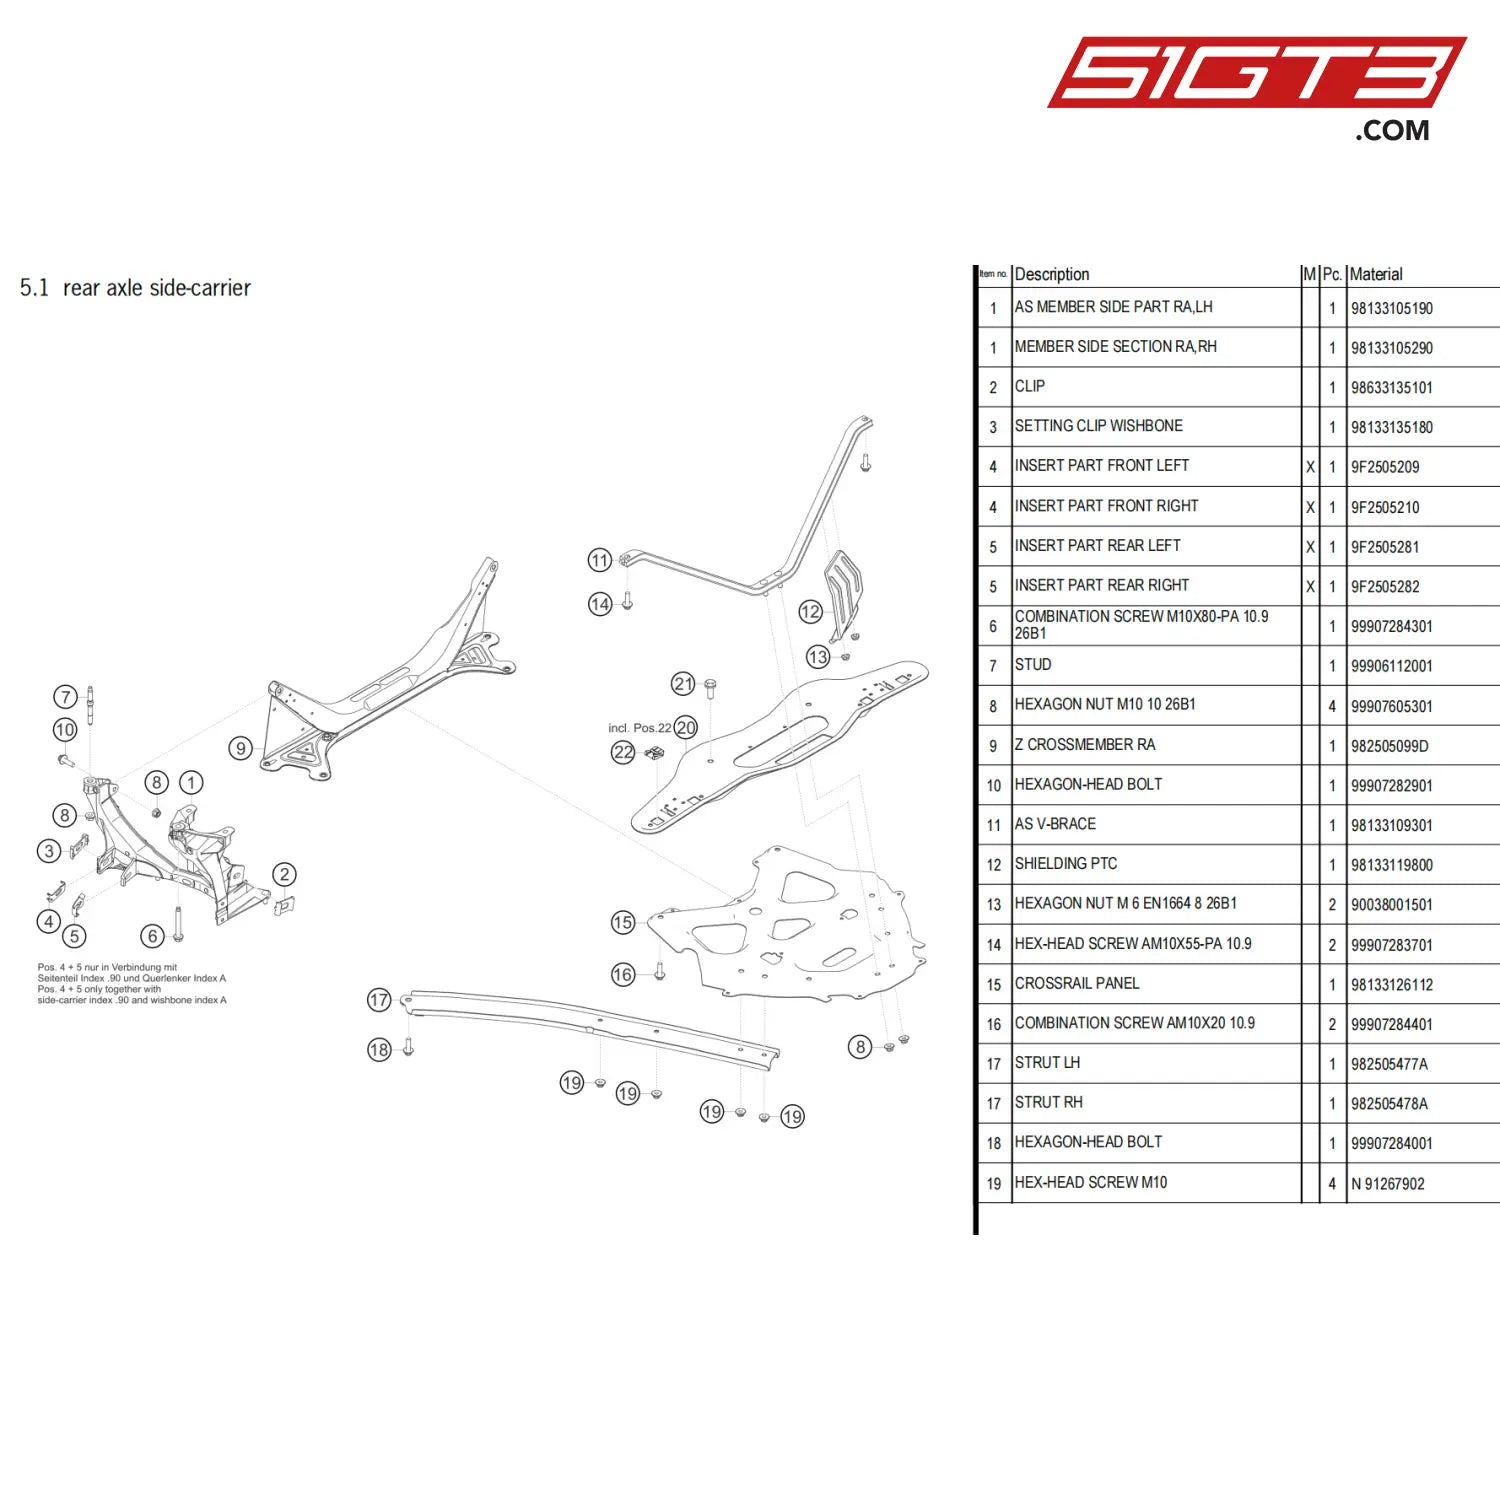 Shielding Ptc - 98133119800 [Porsche 718 Cayman Gt4 Clubsport] Rear Axle Side-Carrier